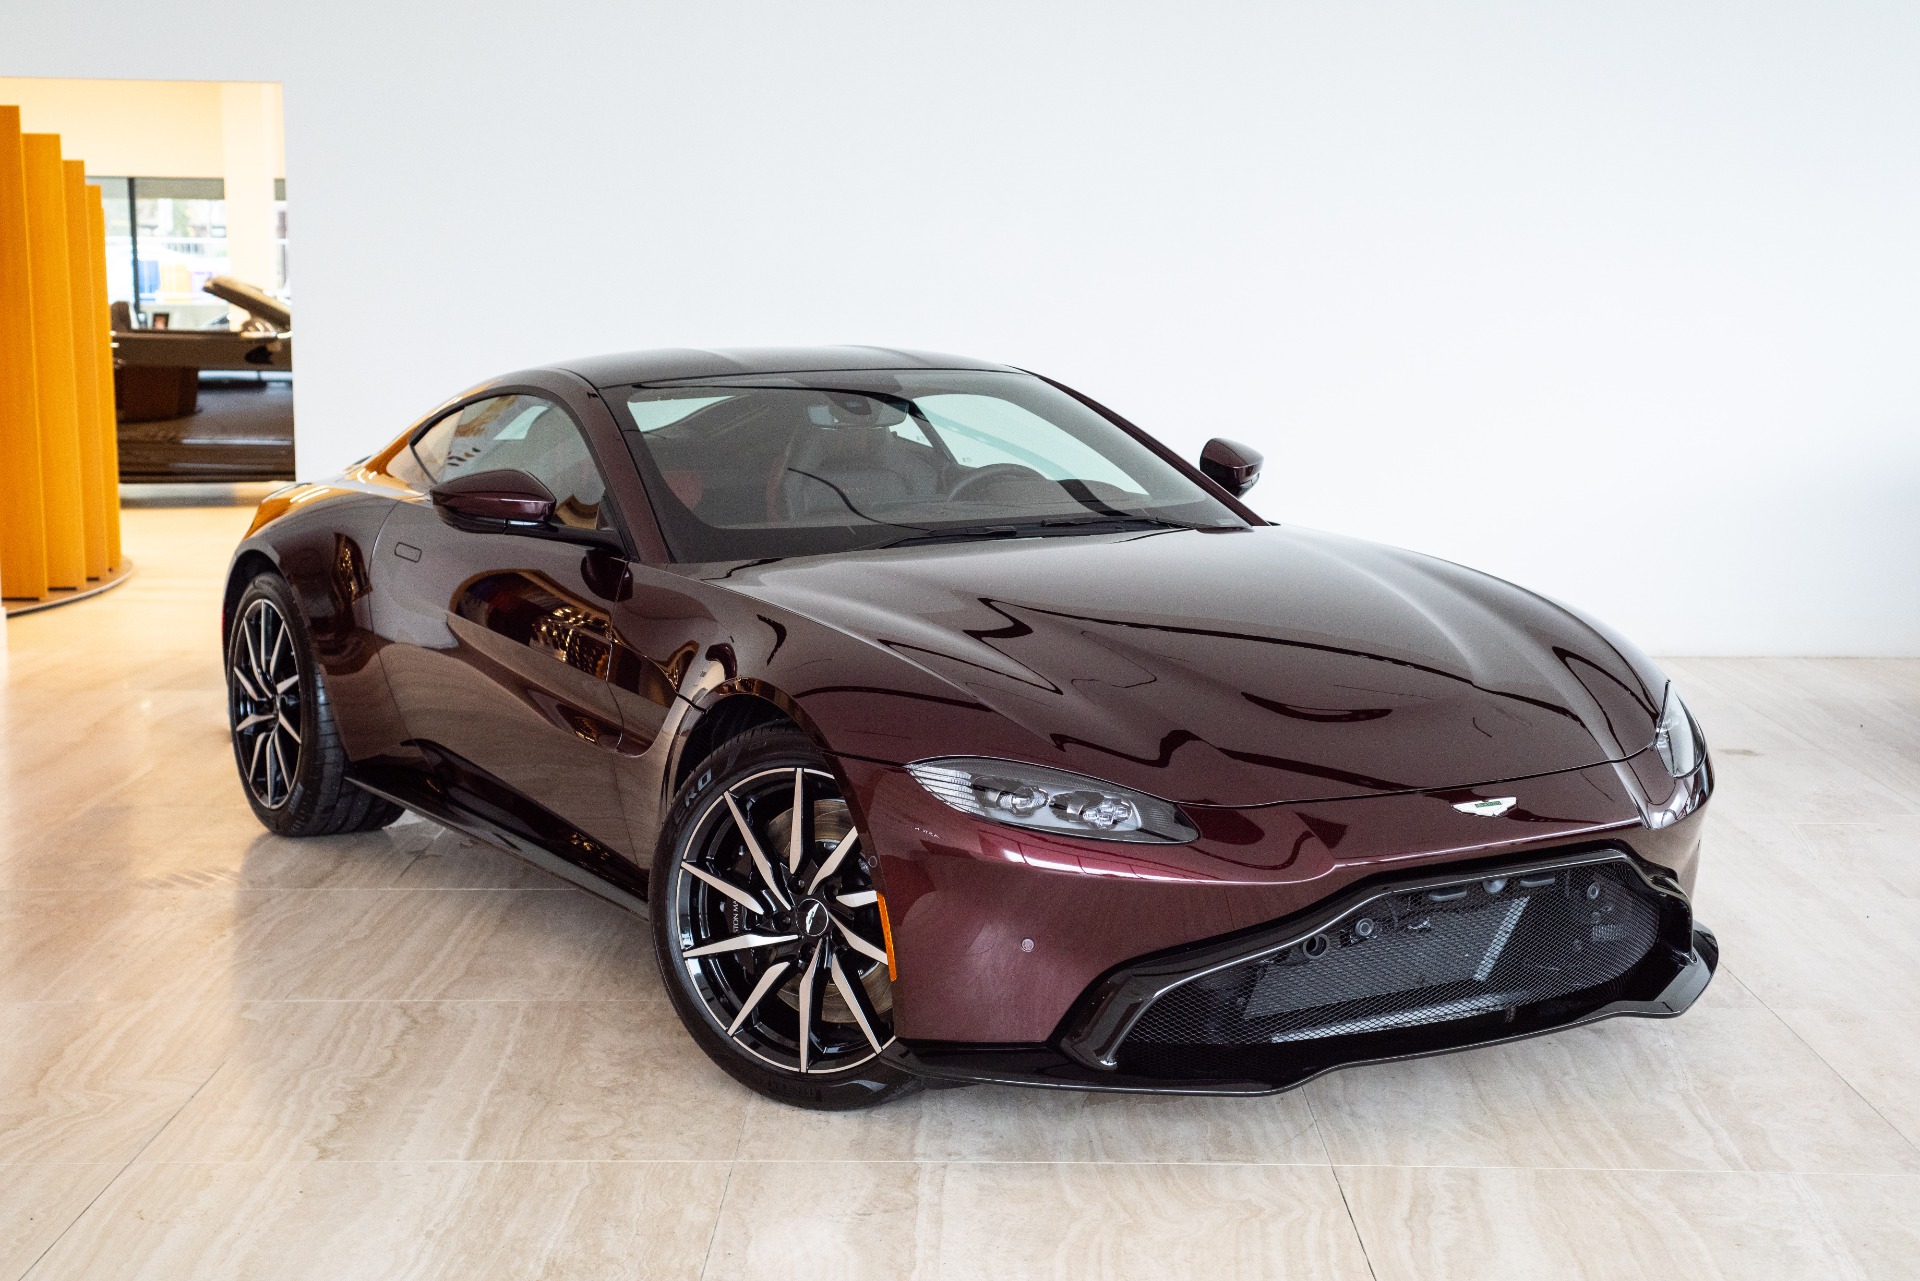 New 2019 Aston Martin Vantage For (Sold) | Aston Washington DC Stock #9N01350